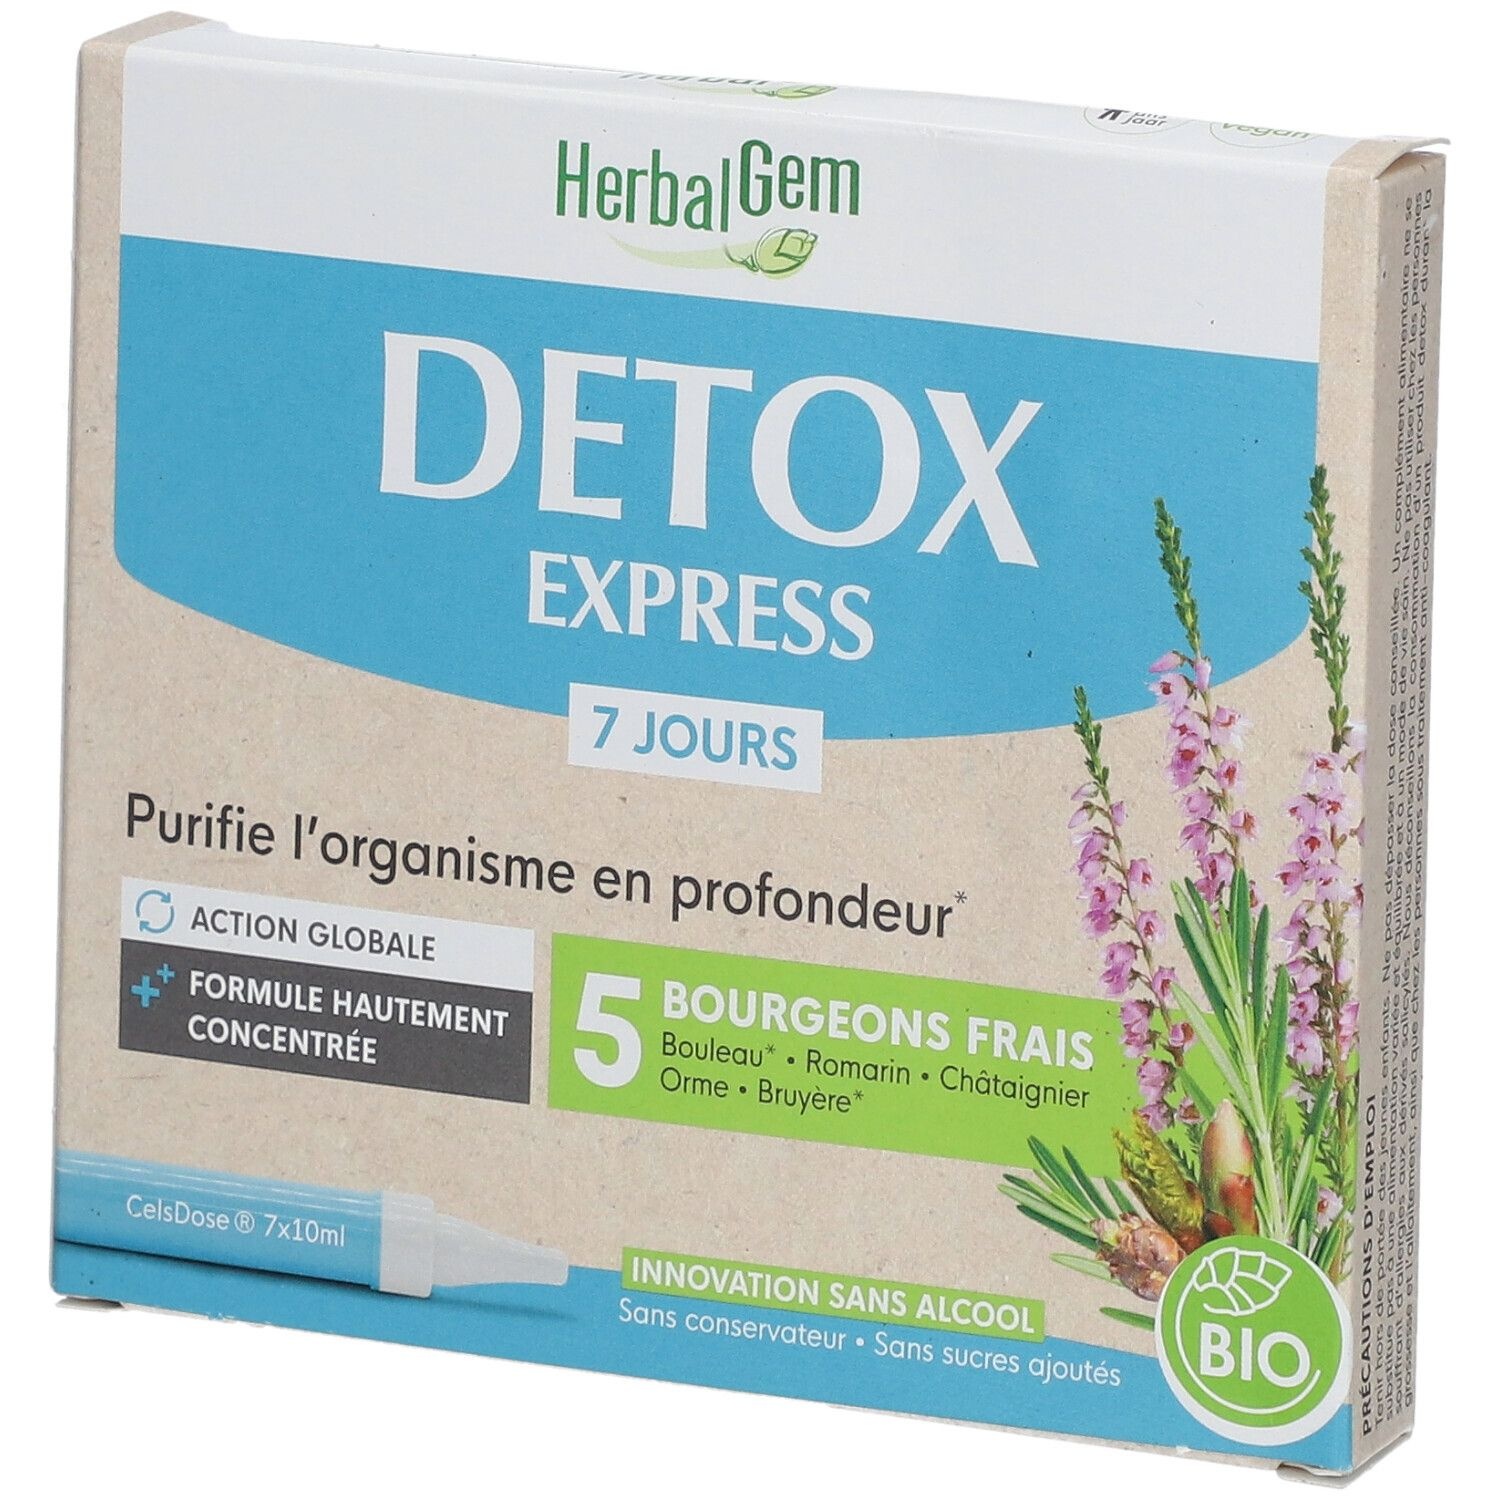 HERBALGEM - Detox Express 7 Jours - Purifie L'Organisme En Profondeur - Complément Alimentaire Gemmothérapie - Formule Hautement Concentrée - Action Globale - 5 Bourgeons Frais - Bio - 7x10ml 7 pc(s) goutte(s) orale(s)